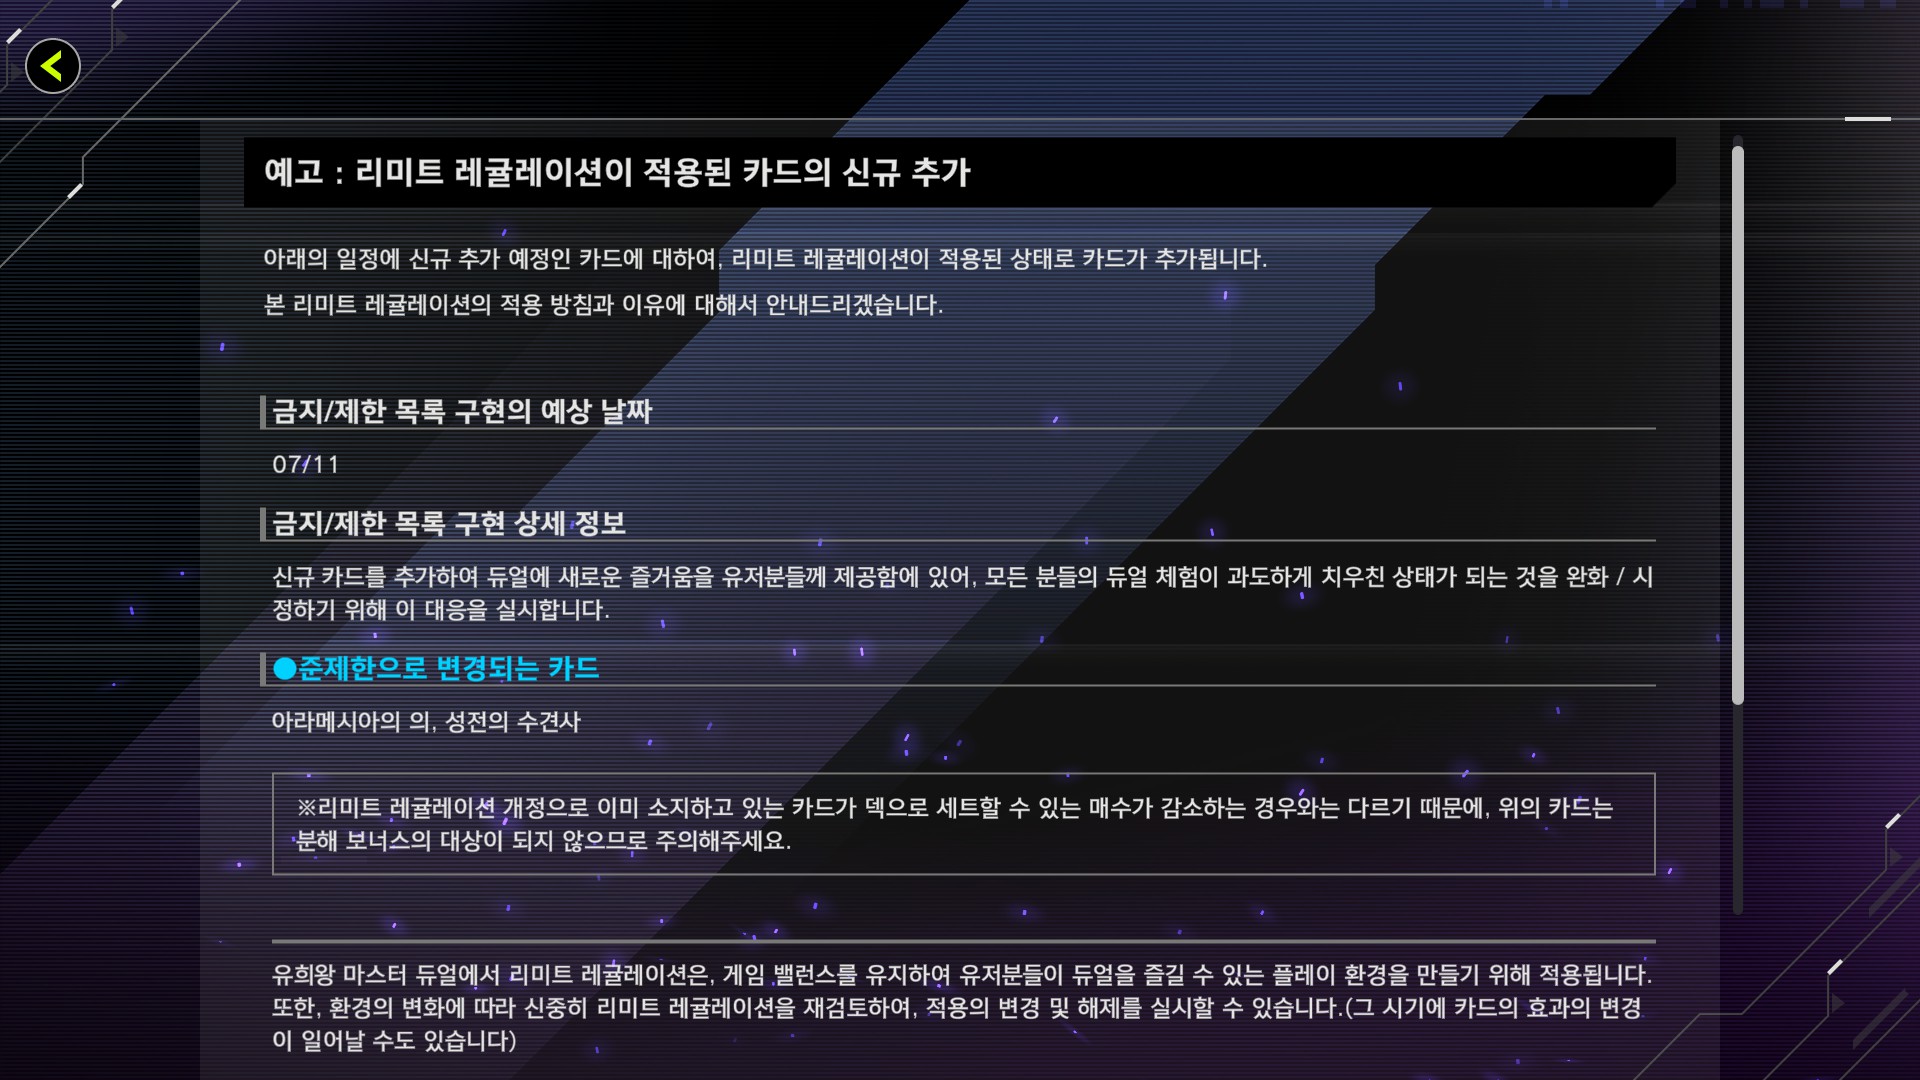 유희왕 마스터듀얼 - 7월 11일 용사 & 후완다리즈 출시 예정, 기타 정보